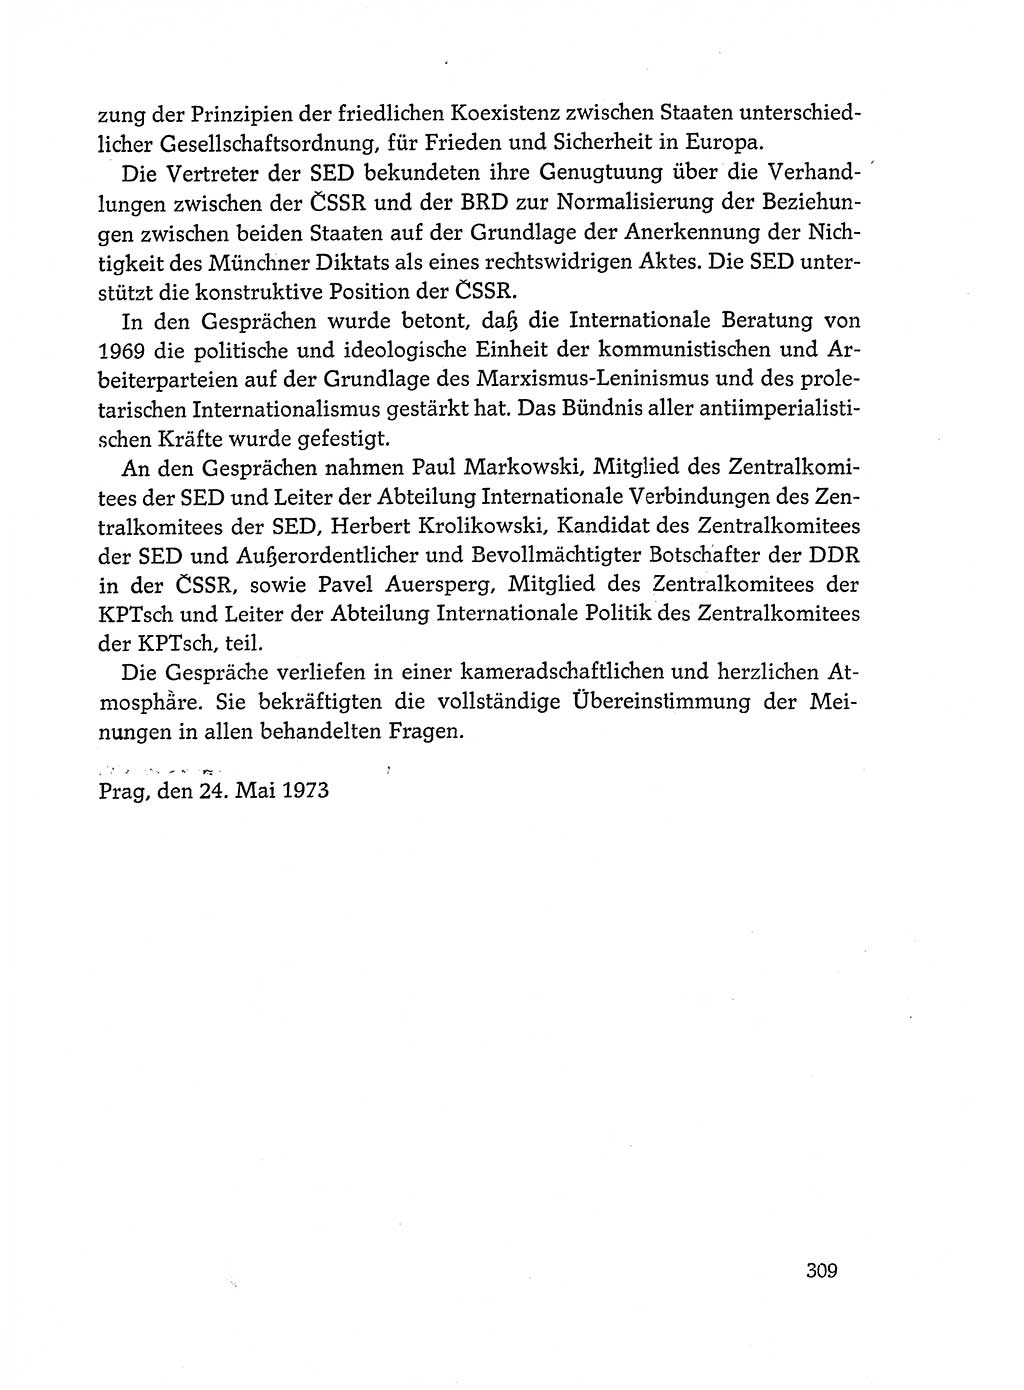 Dokumente der Sozialistischen Einheitspartei Deutschlands (SED) [Deutsche Demokratische Republik (DDR)] 1972-1973, Seite 309 (Dok. SED DDR 1972-1973, S. 309)